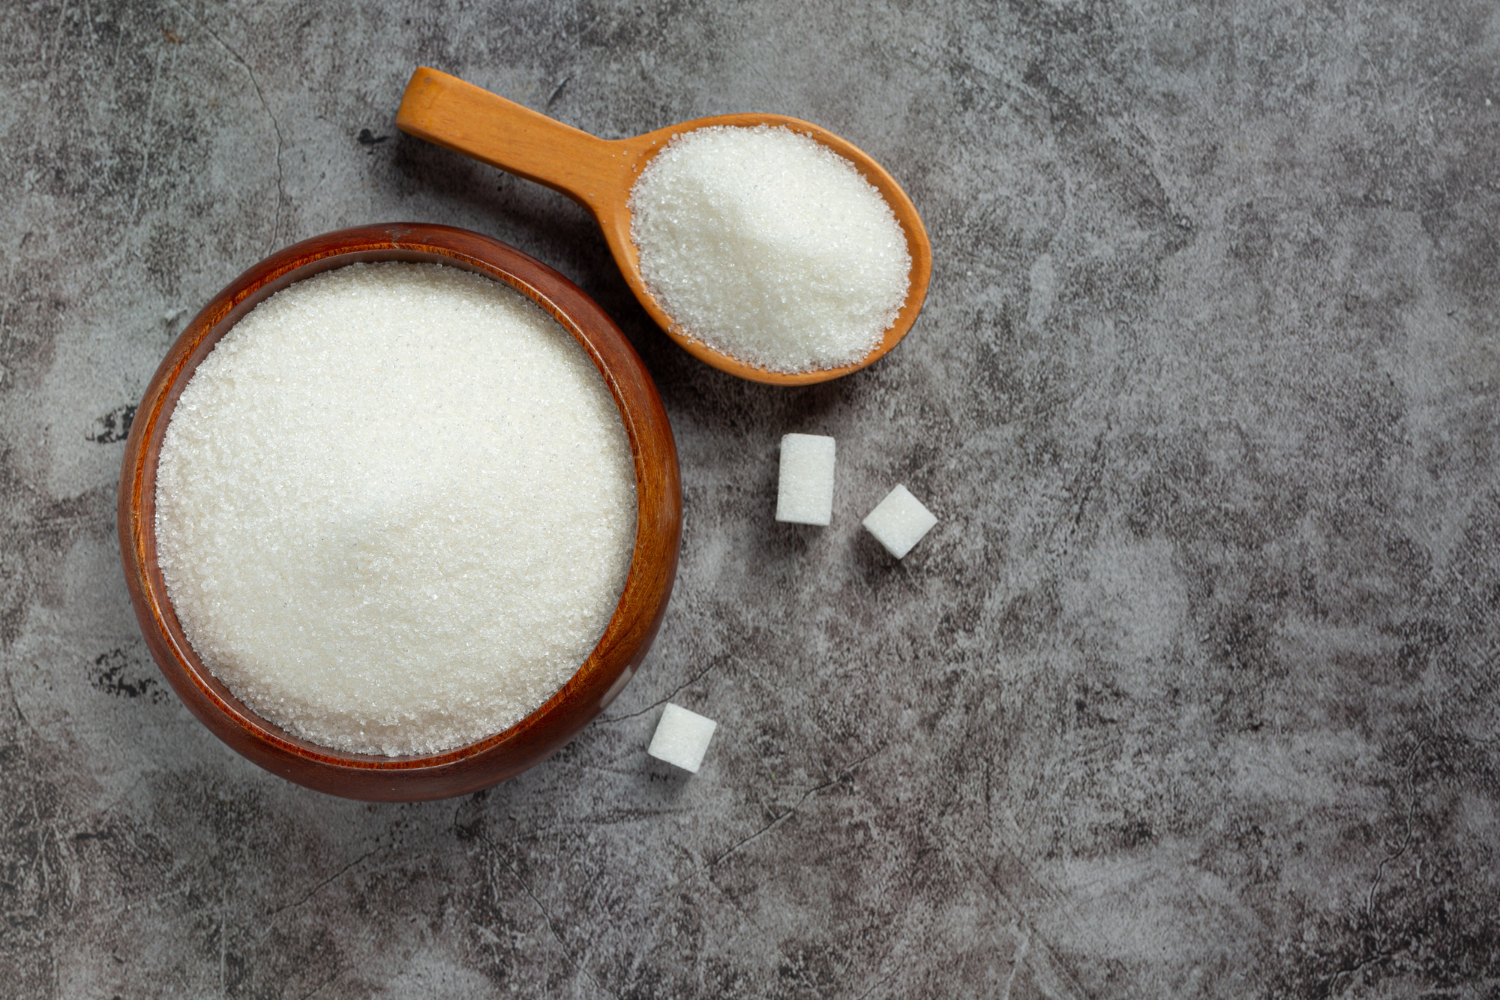 Descubra agora quais são so benefícios de misturar cravo e bicarbonato de sódio